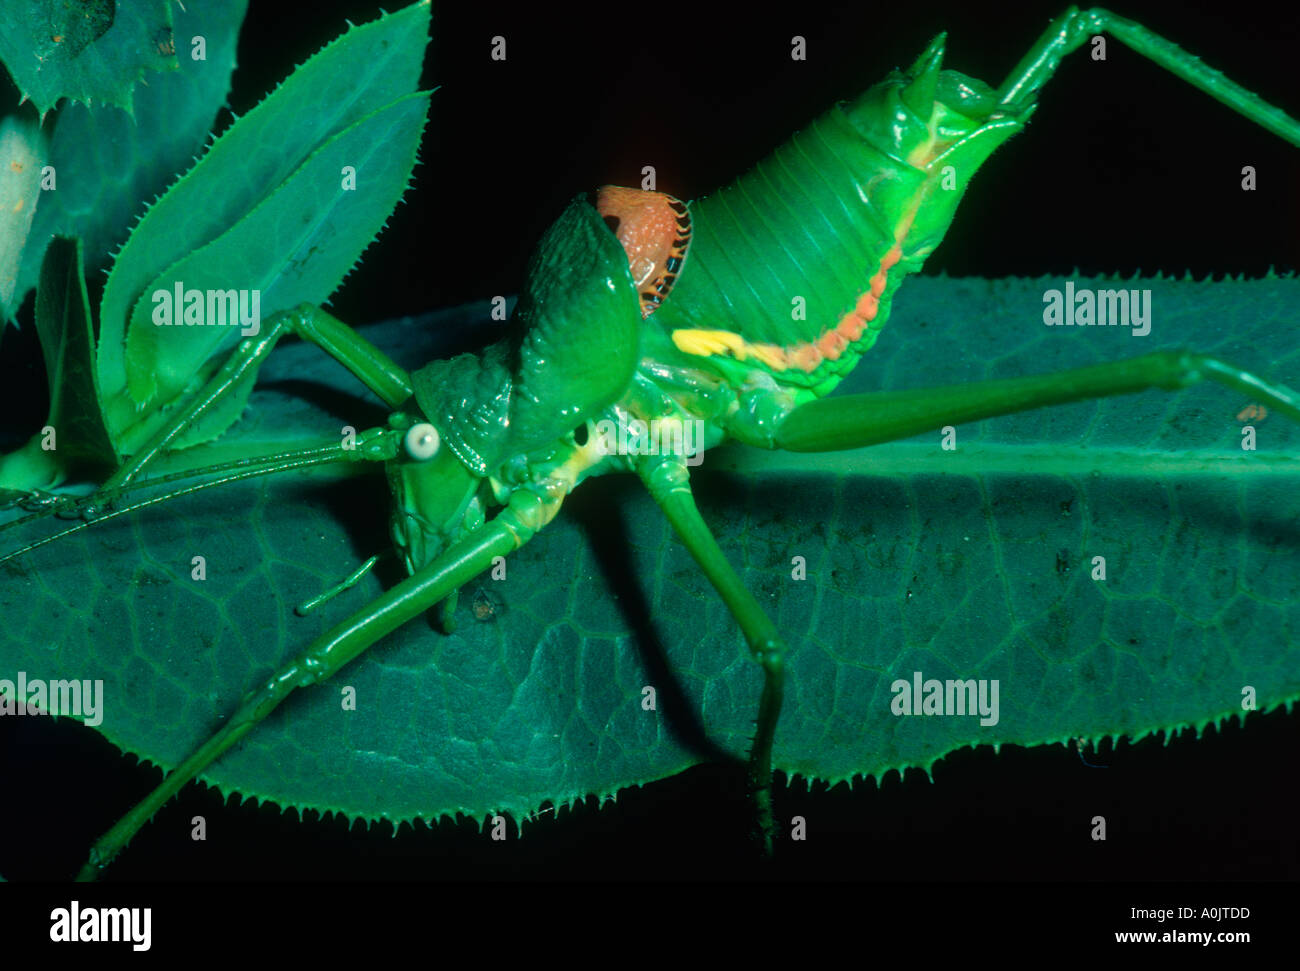 Bush-cricket, Ephippiger ephippiger. Female on leaf Stock Photo